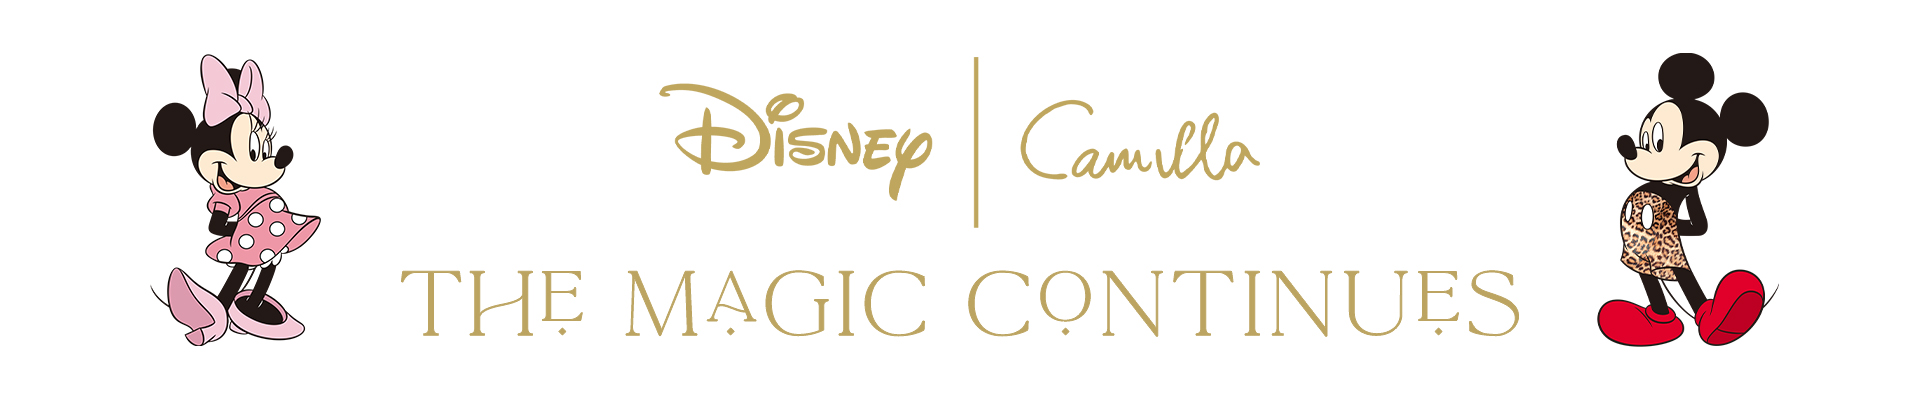 Disney | Camilla THE MAGIC CONTINUES